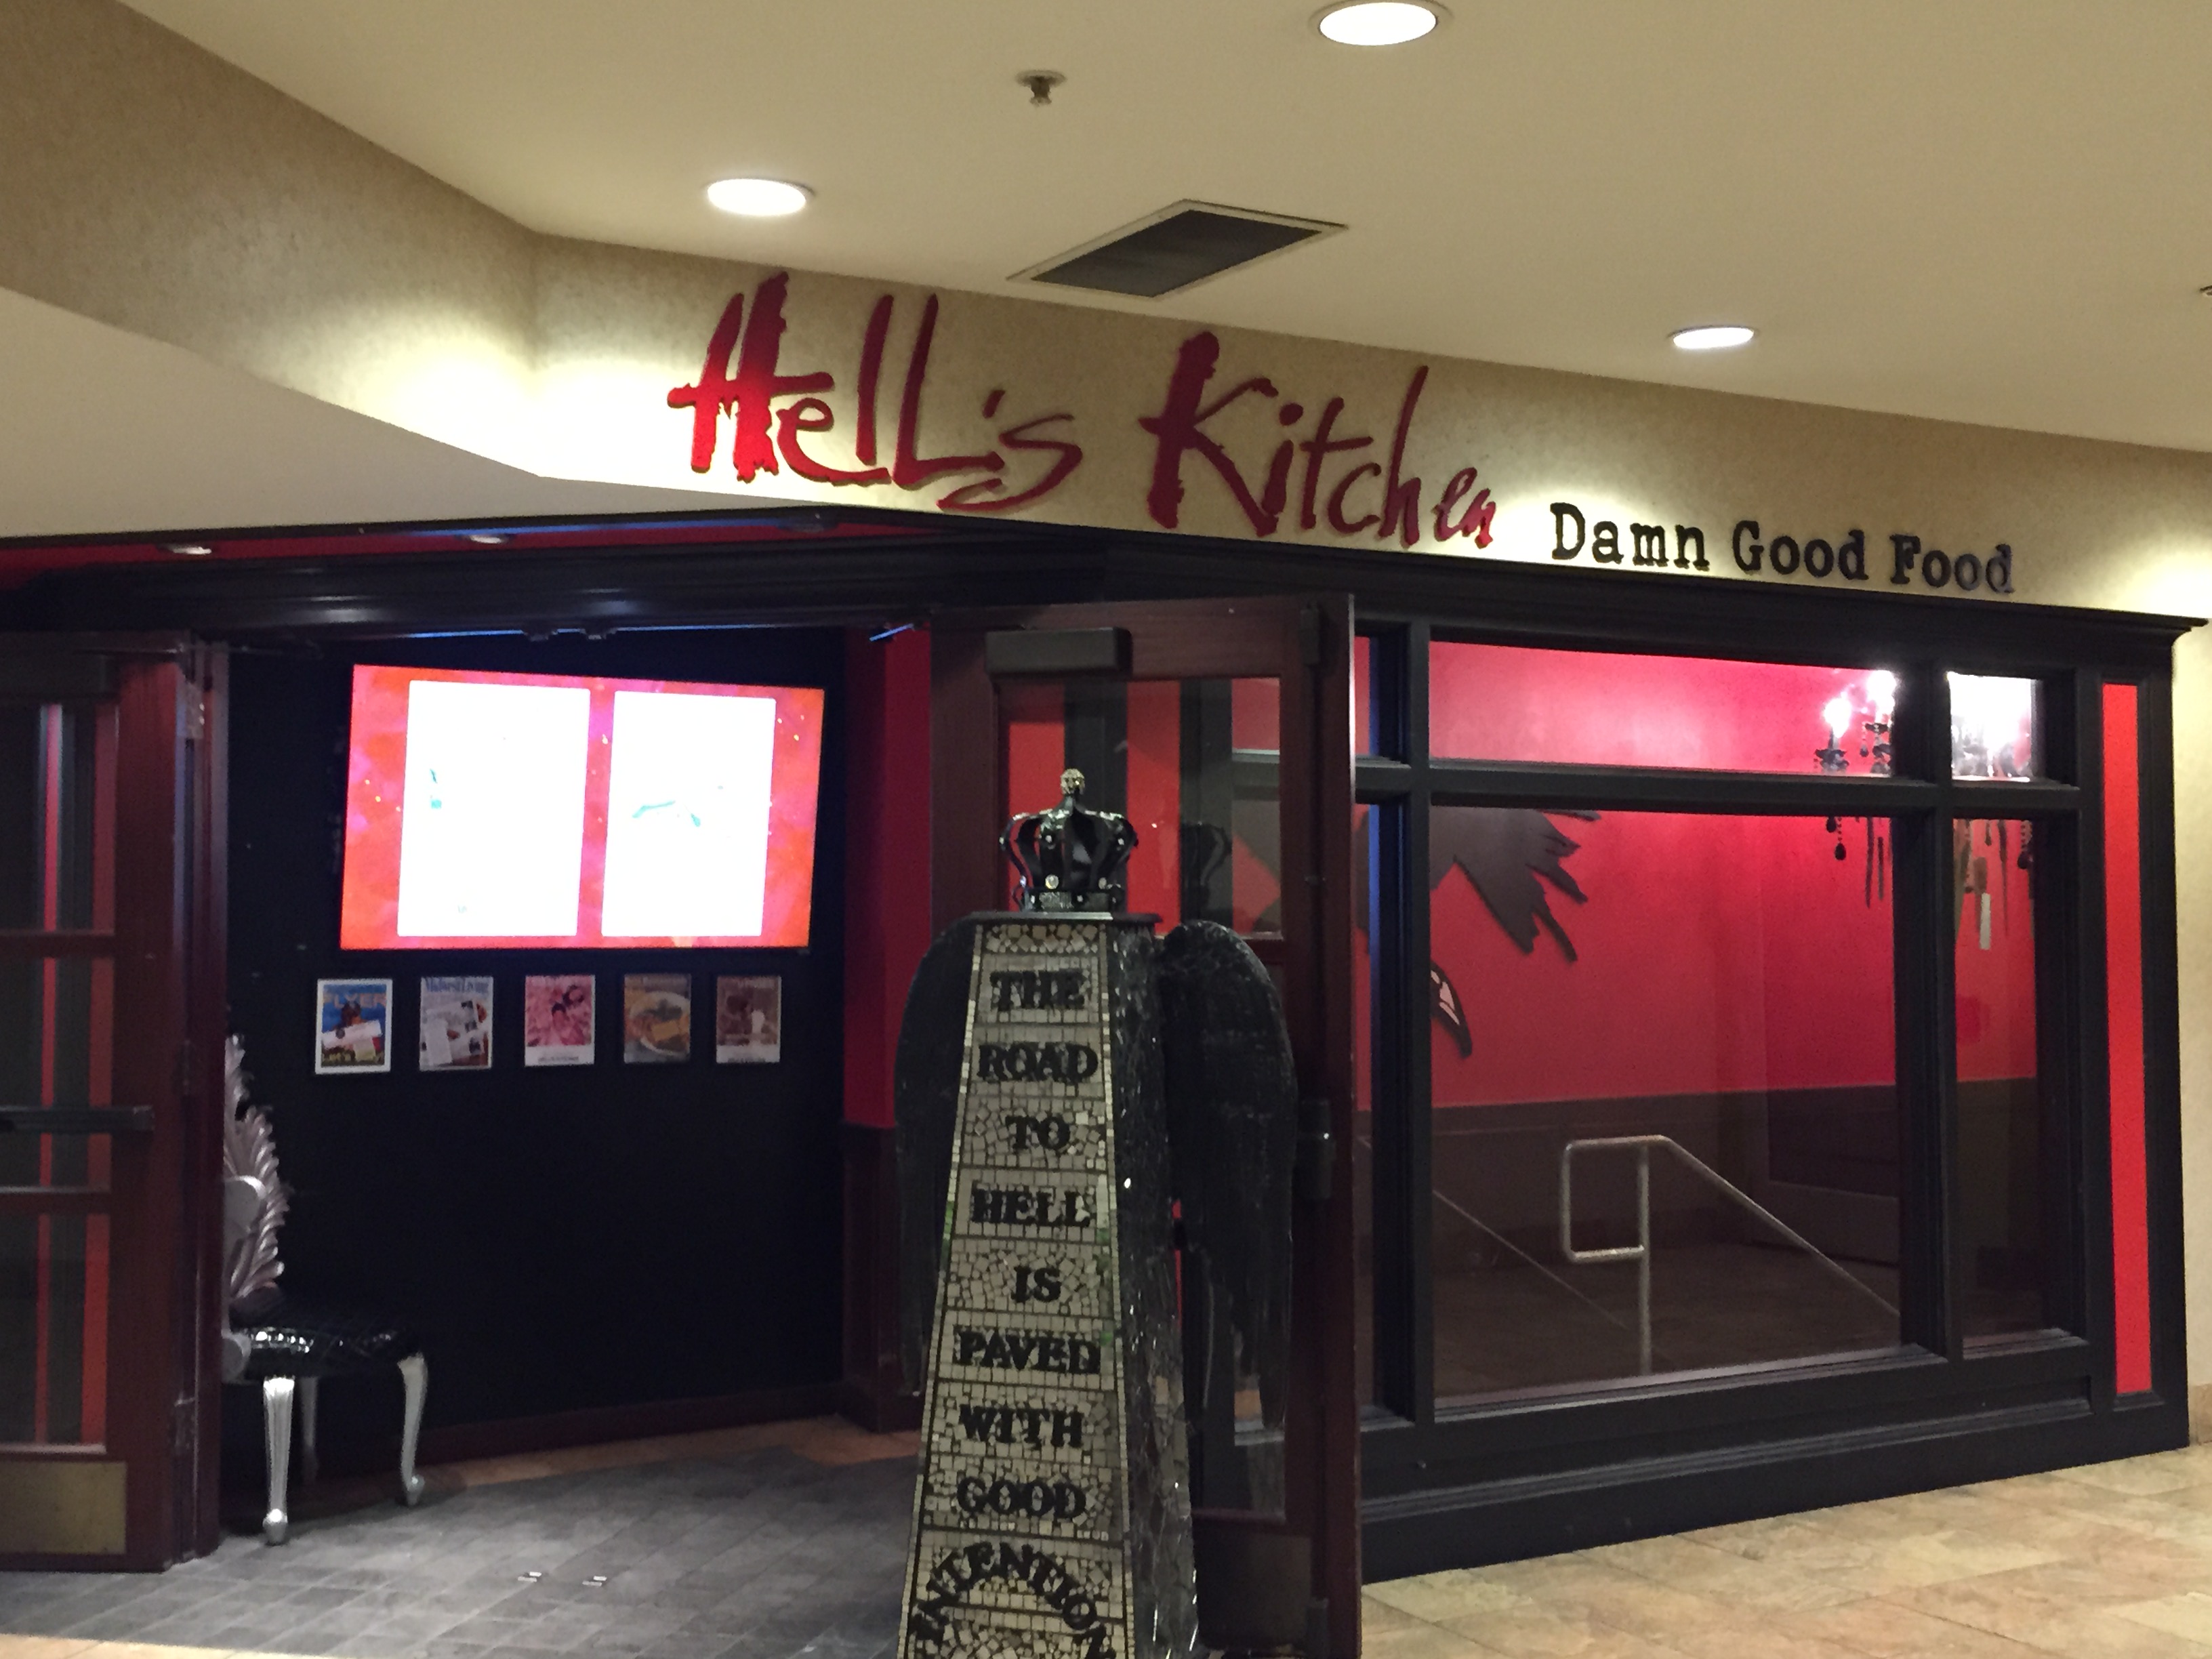 Hells Kitchen Entrance